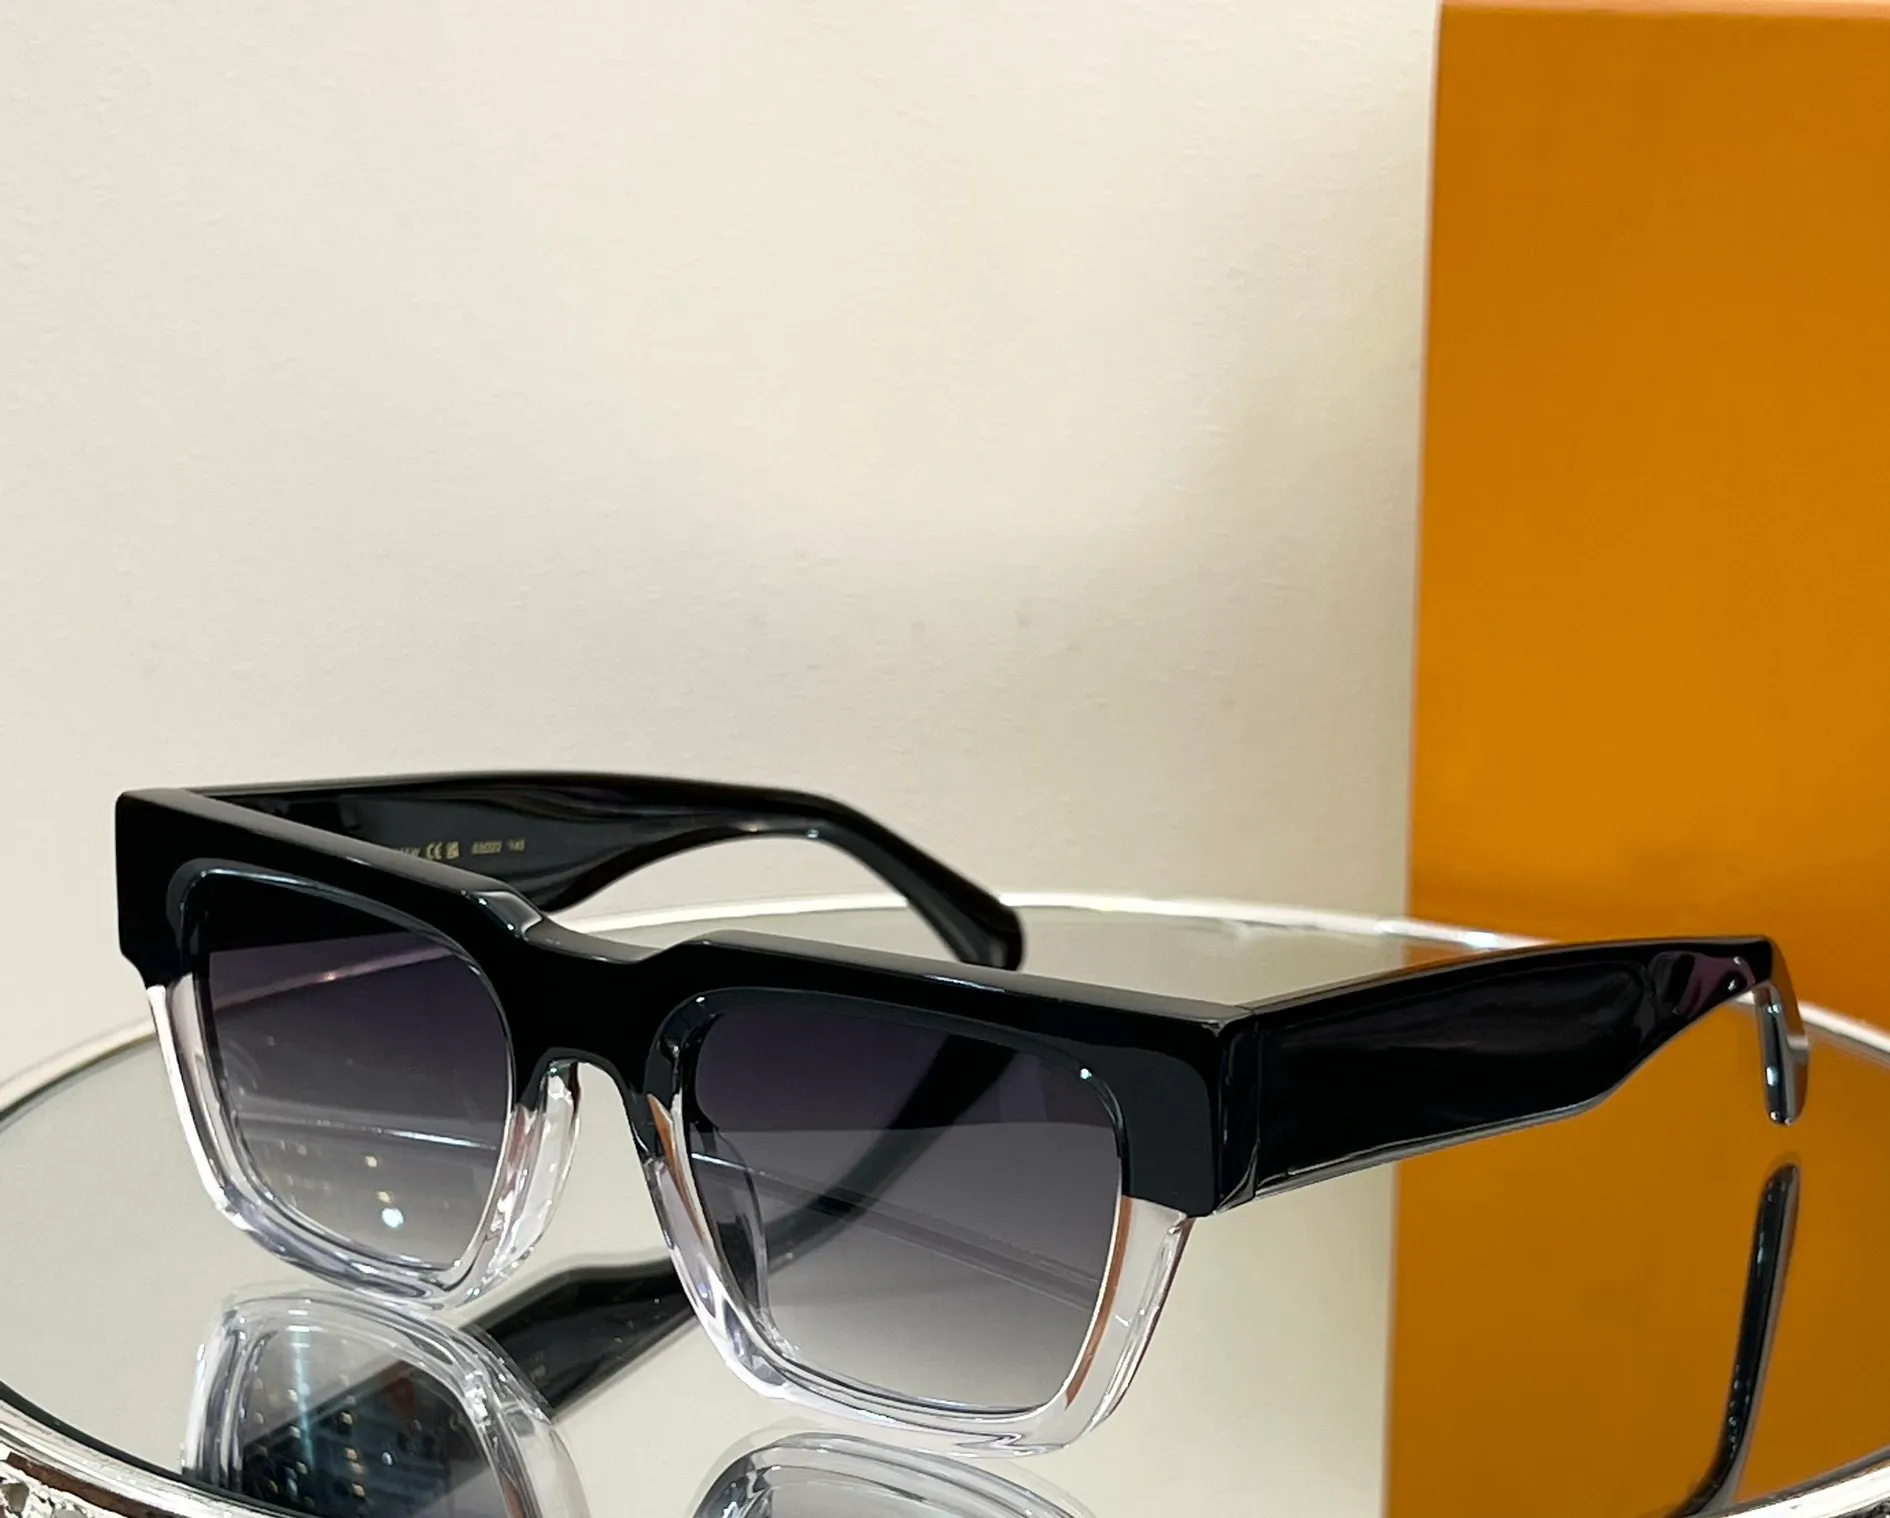 Schwarze quadratische Sonnenbrille aus Kristall, grau schattiert, Herren-Luxus-Sonnenbrille, modische Sommer-Sonnenbrille, Sonnenbrille mit UV-Schutz, mit Box